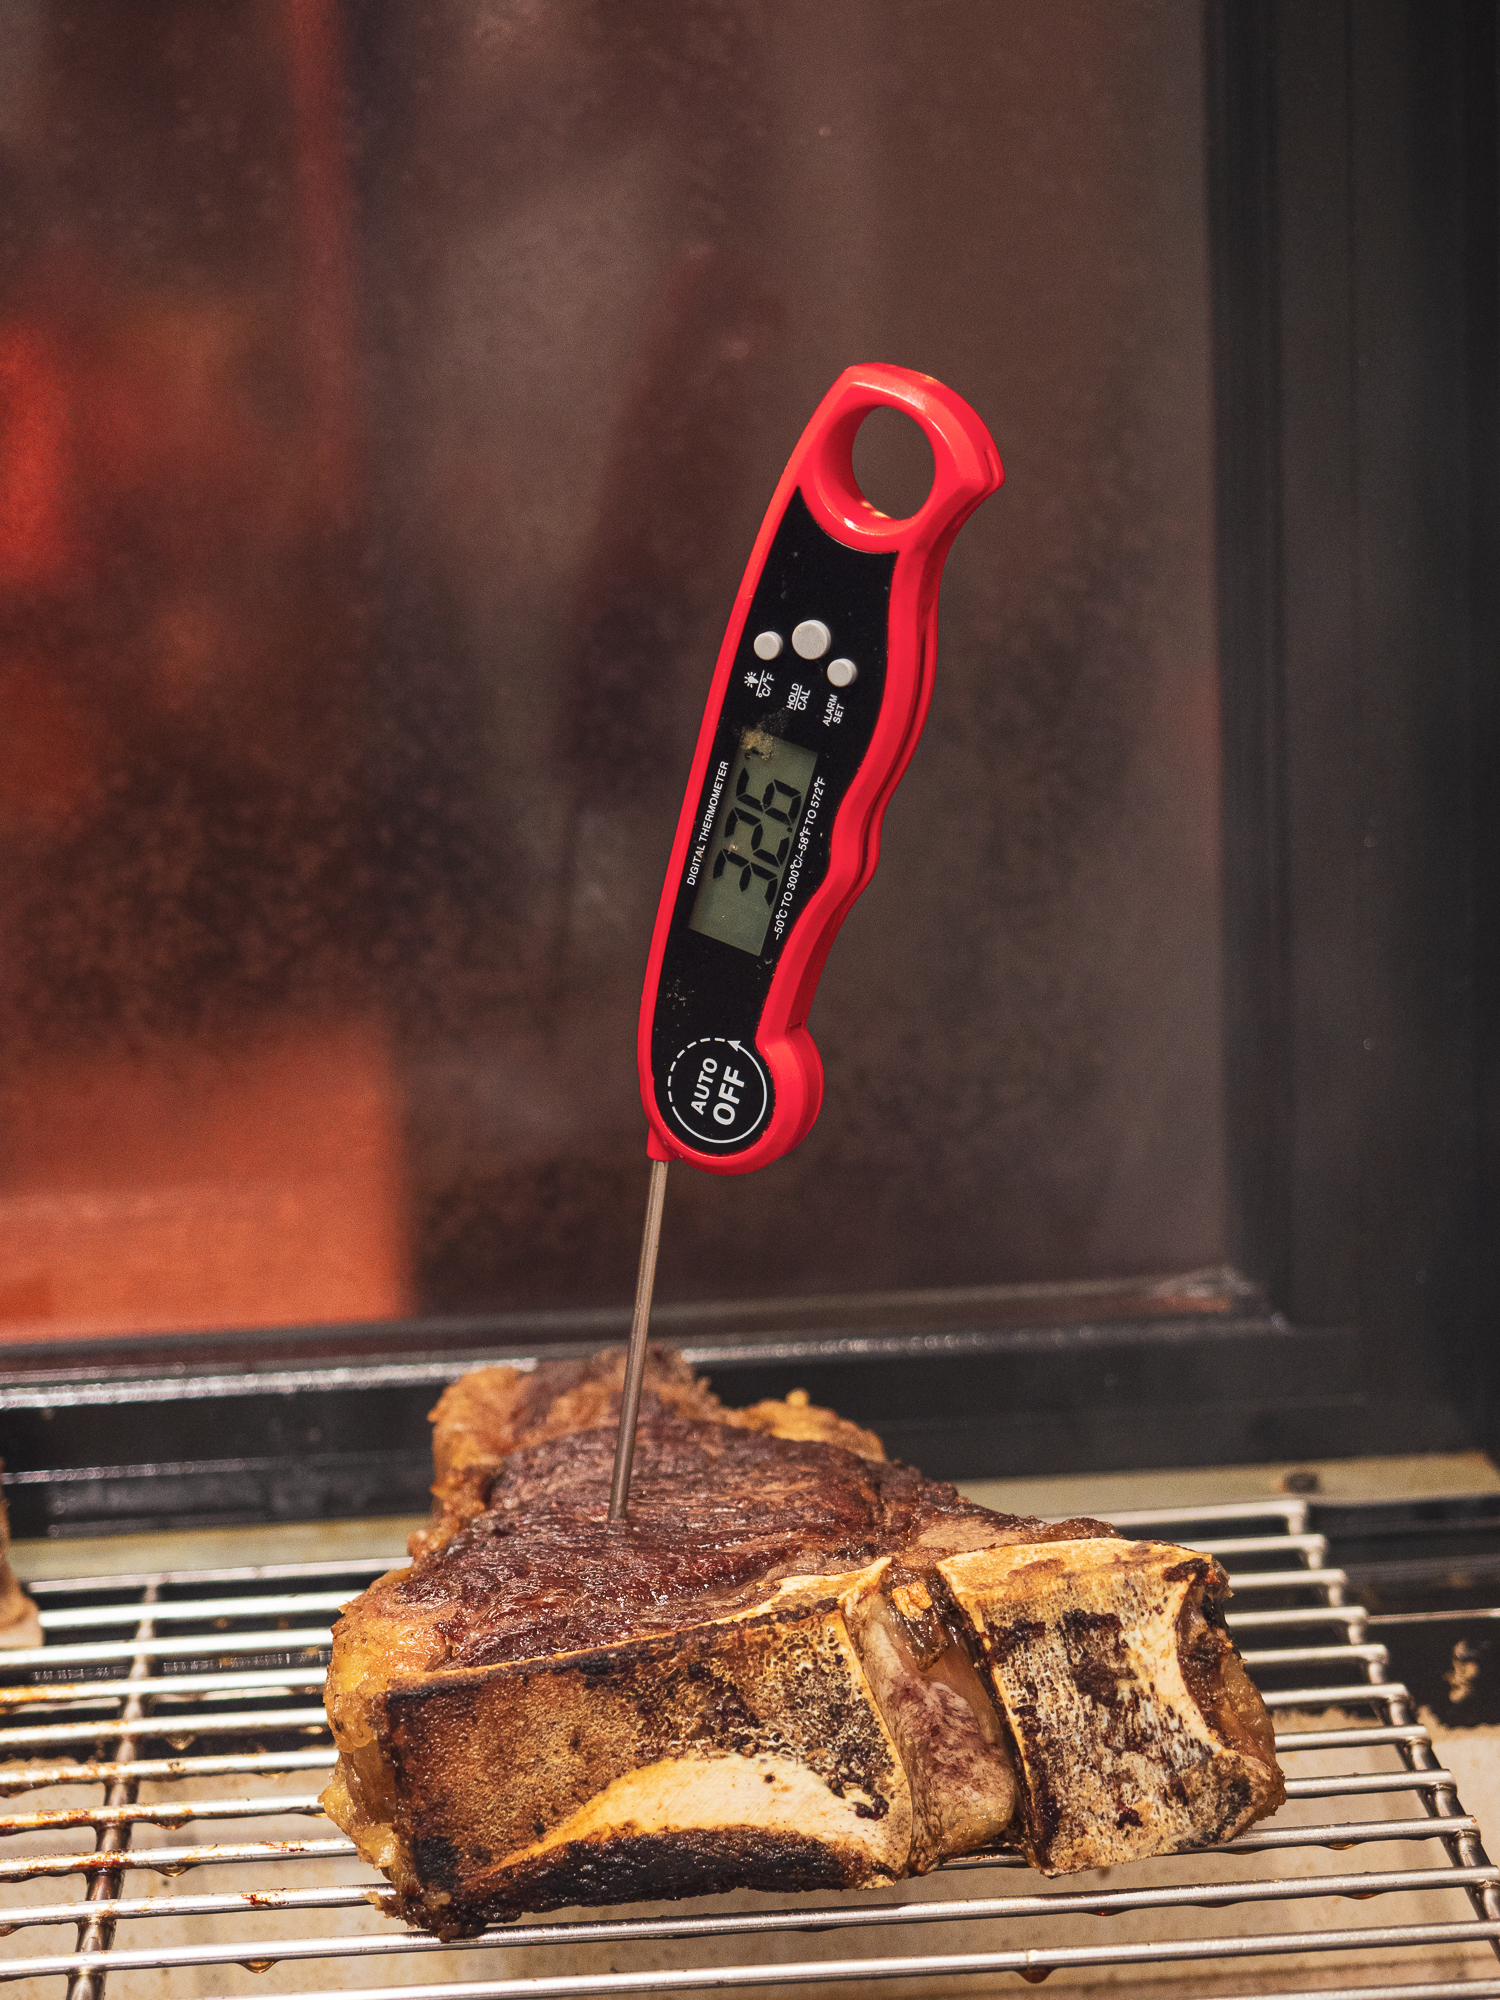 La carne viene messa su una piastra rialzata per controllare la cottura con un termometro